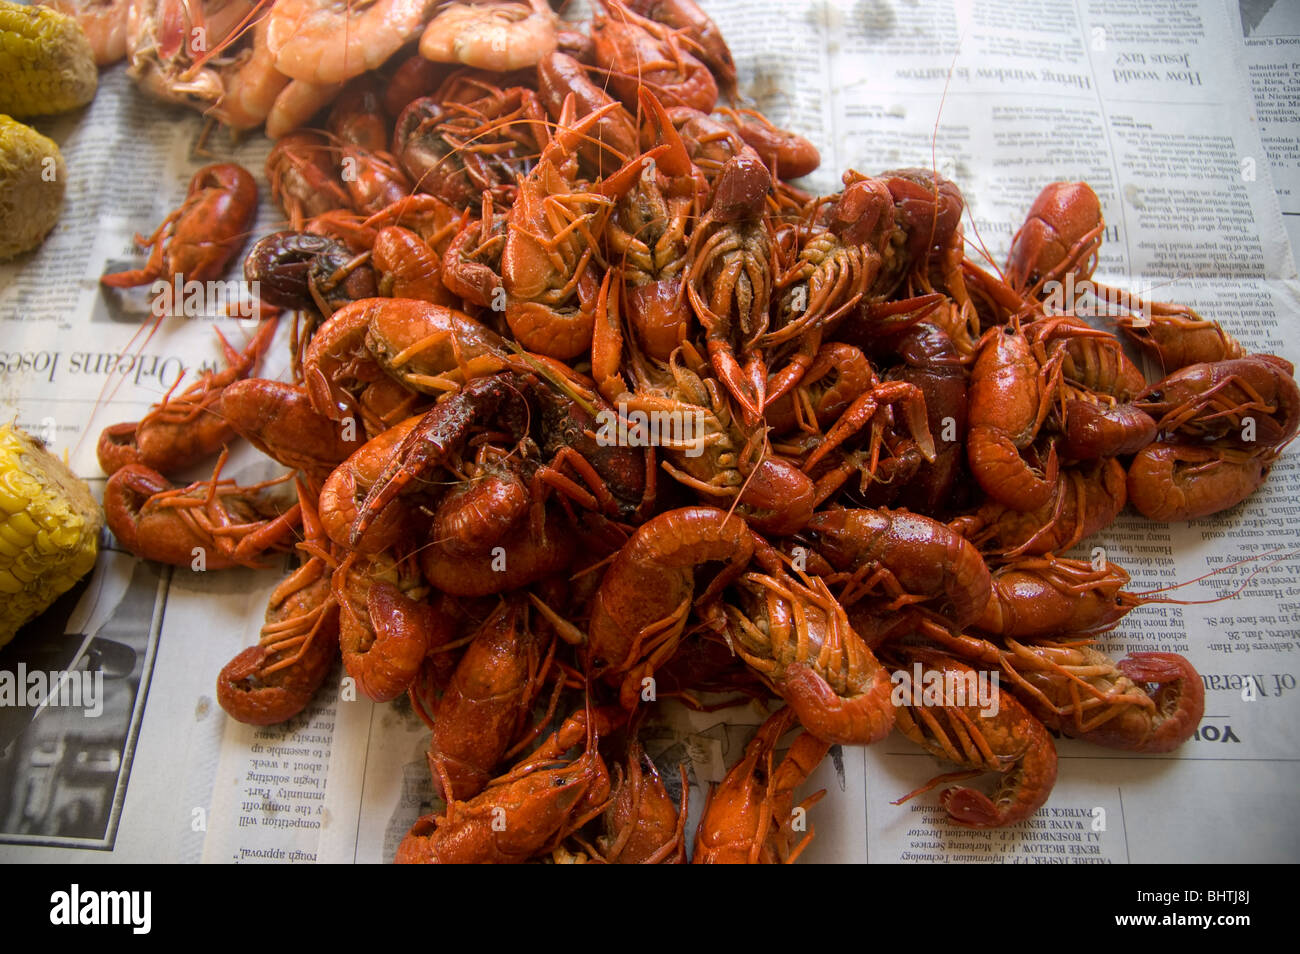 Louisiana Crayfish Stock Photos Amp Louisiana Crayfish Stock